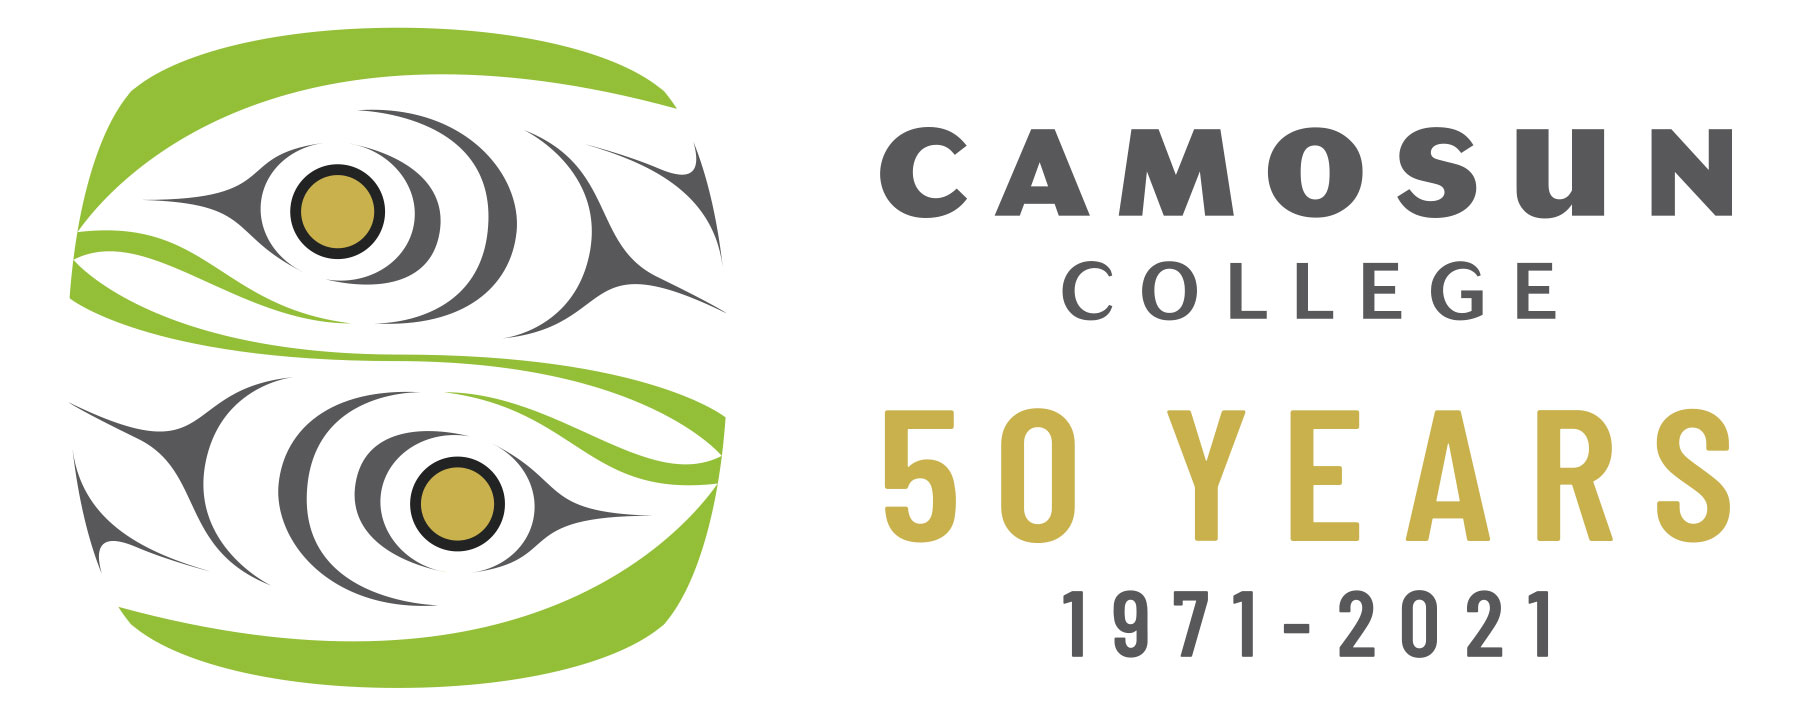 Camosun College - 50 years